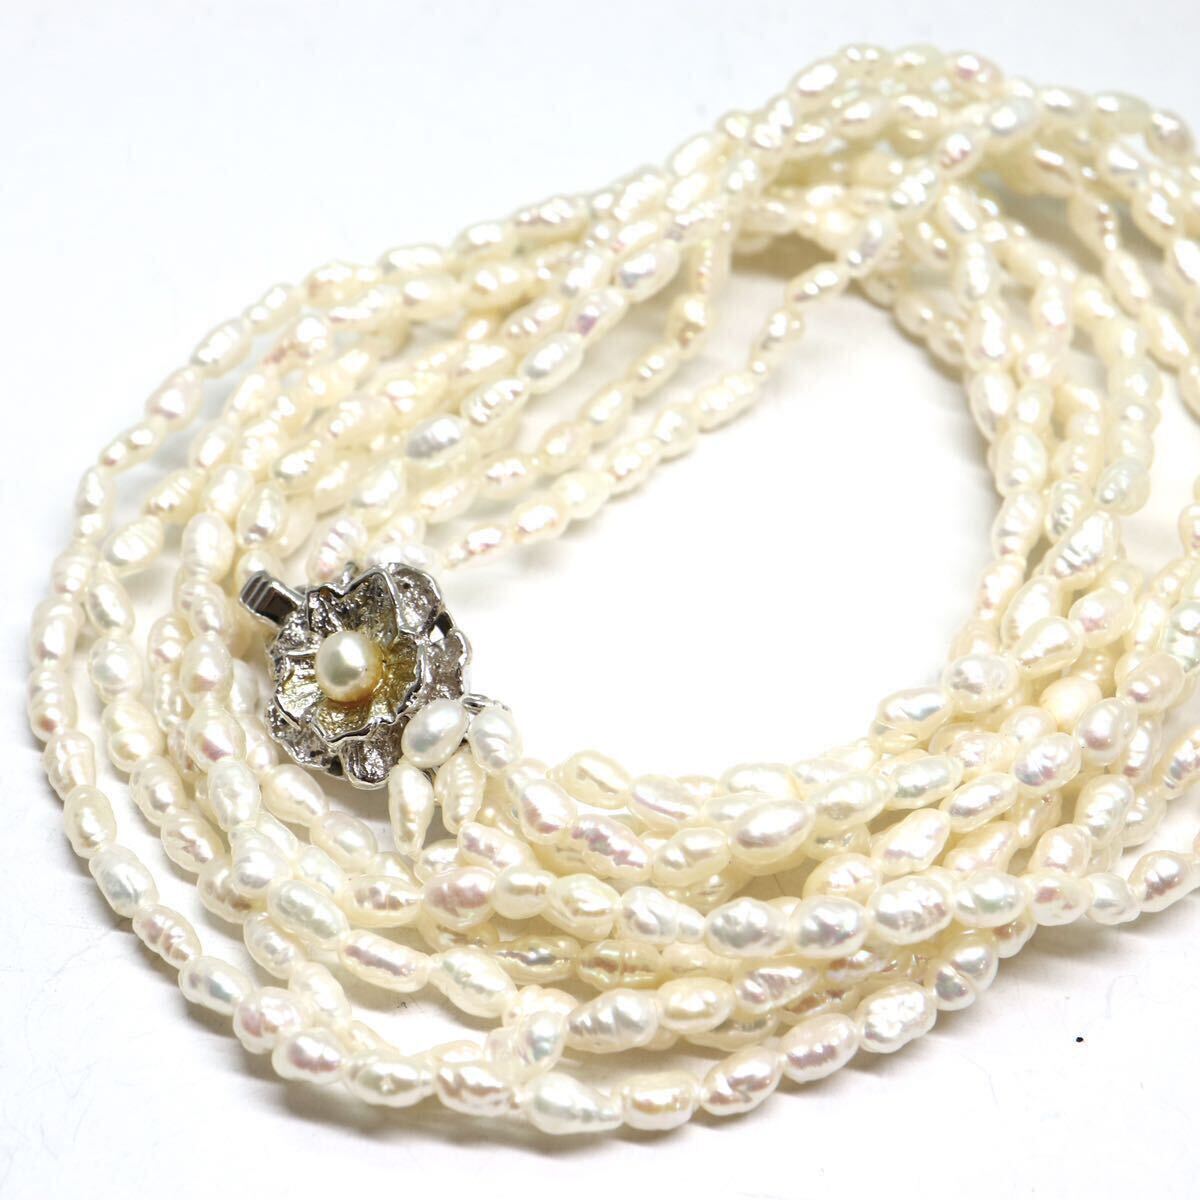 《本真珠ネックレス》M 30.6g 約40cm pearl necklace ジュエリー jewelry CE0/DA0の画像1